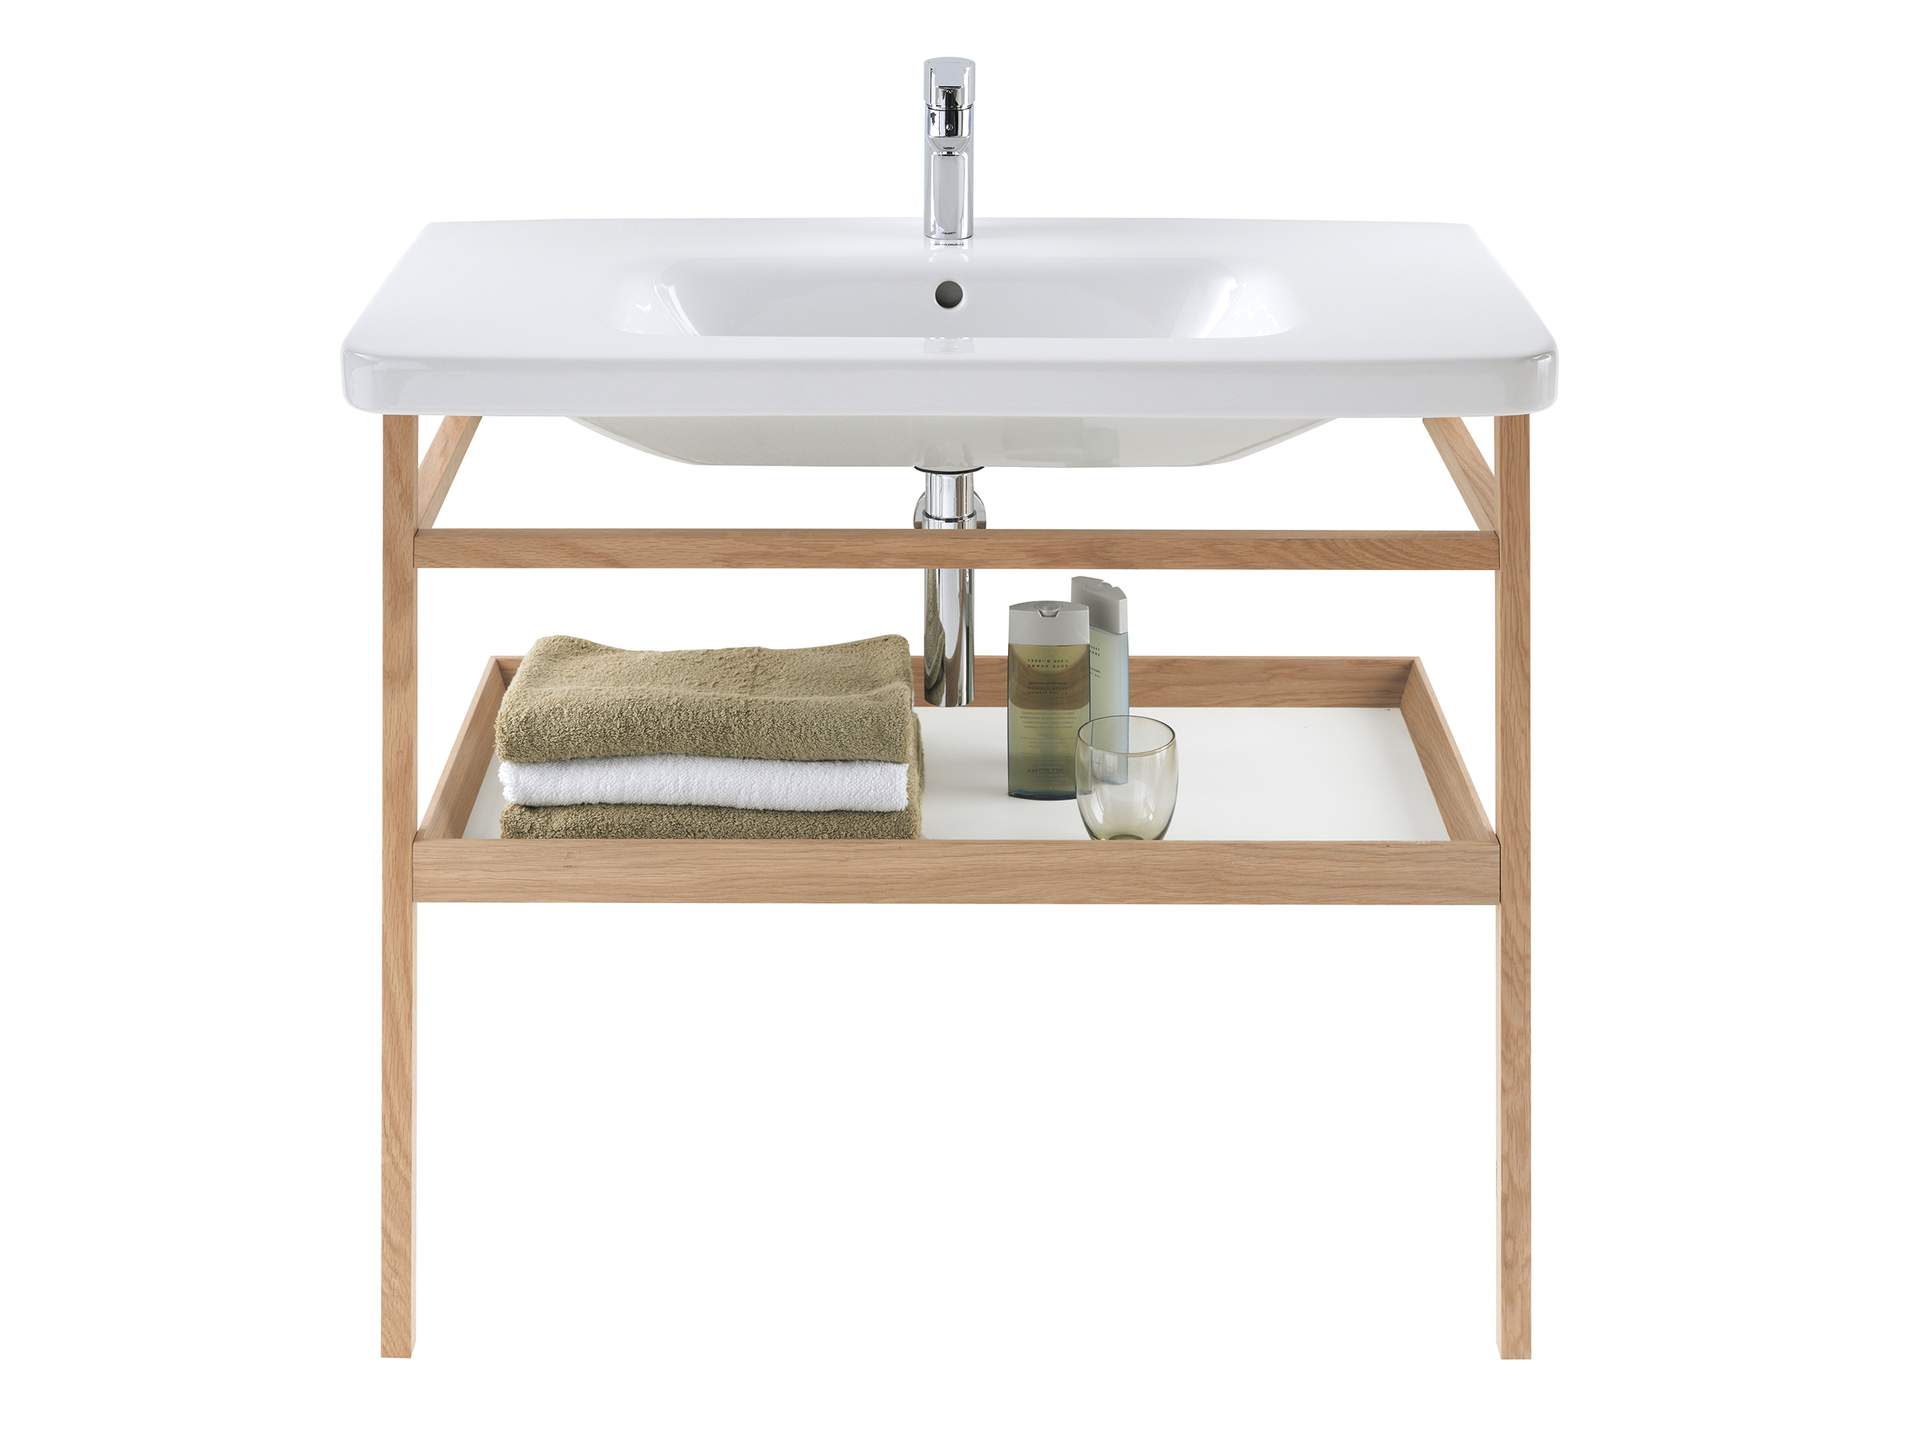 Furniture washbasin, 232012